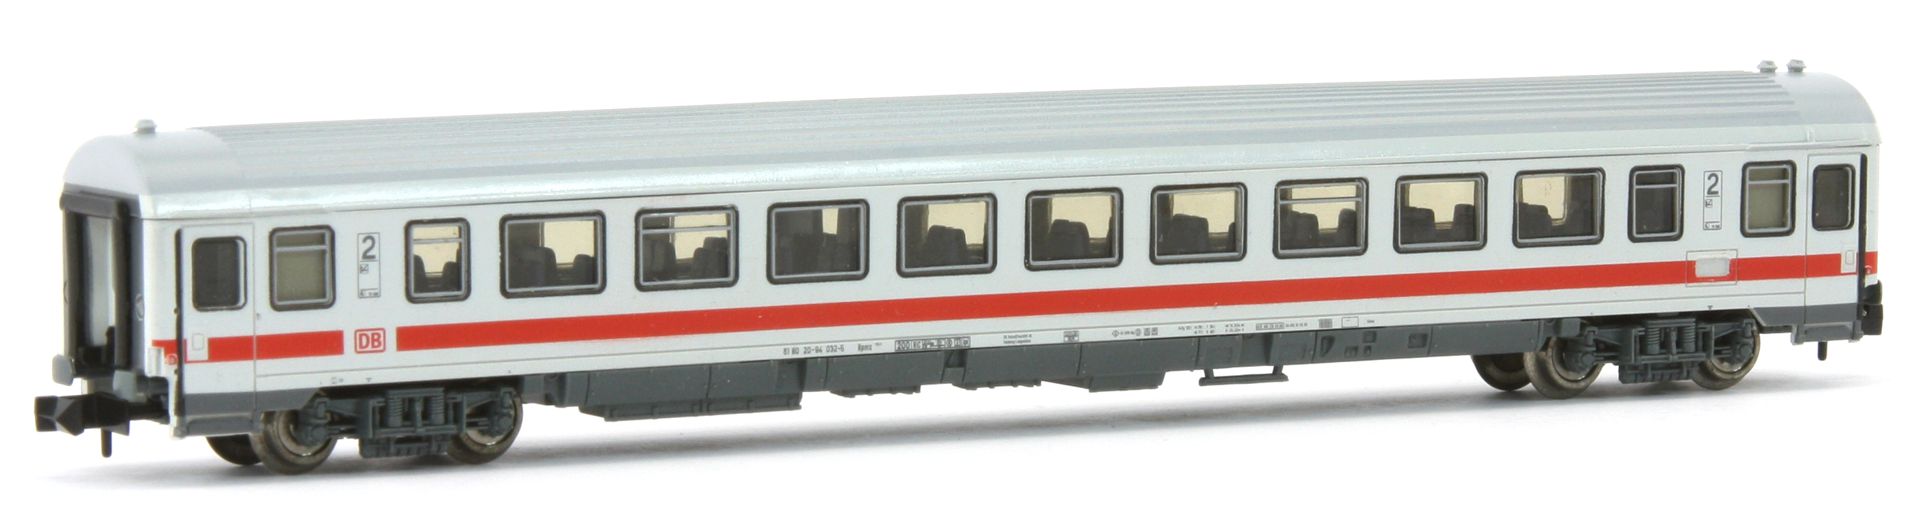 Roco 24421-G - IC-Schnellzugwagen, 2.Klasse